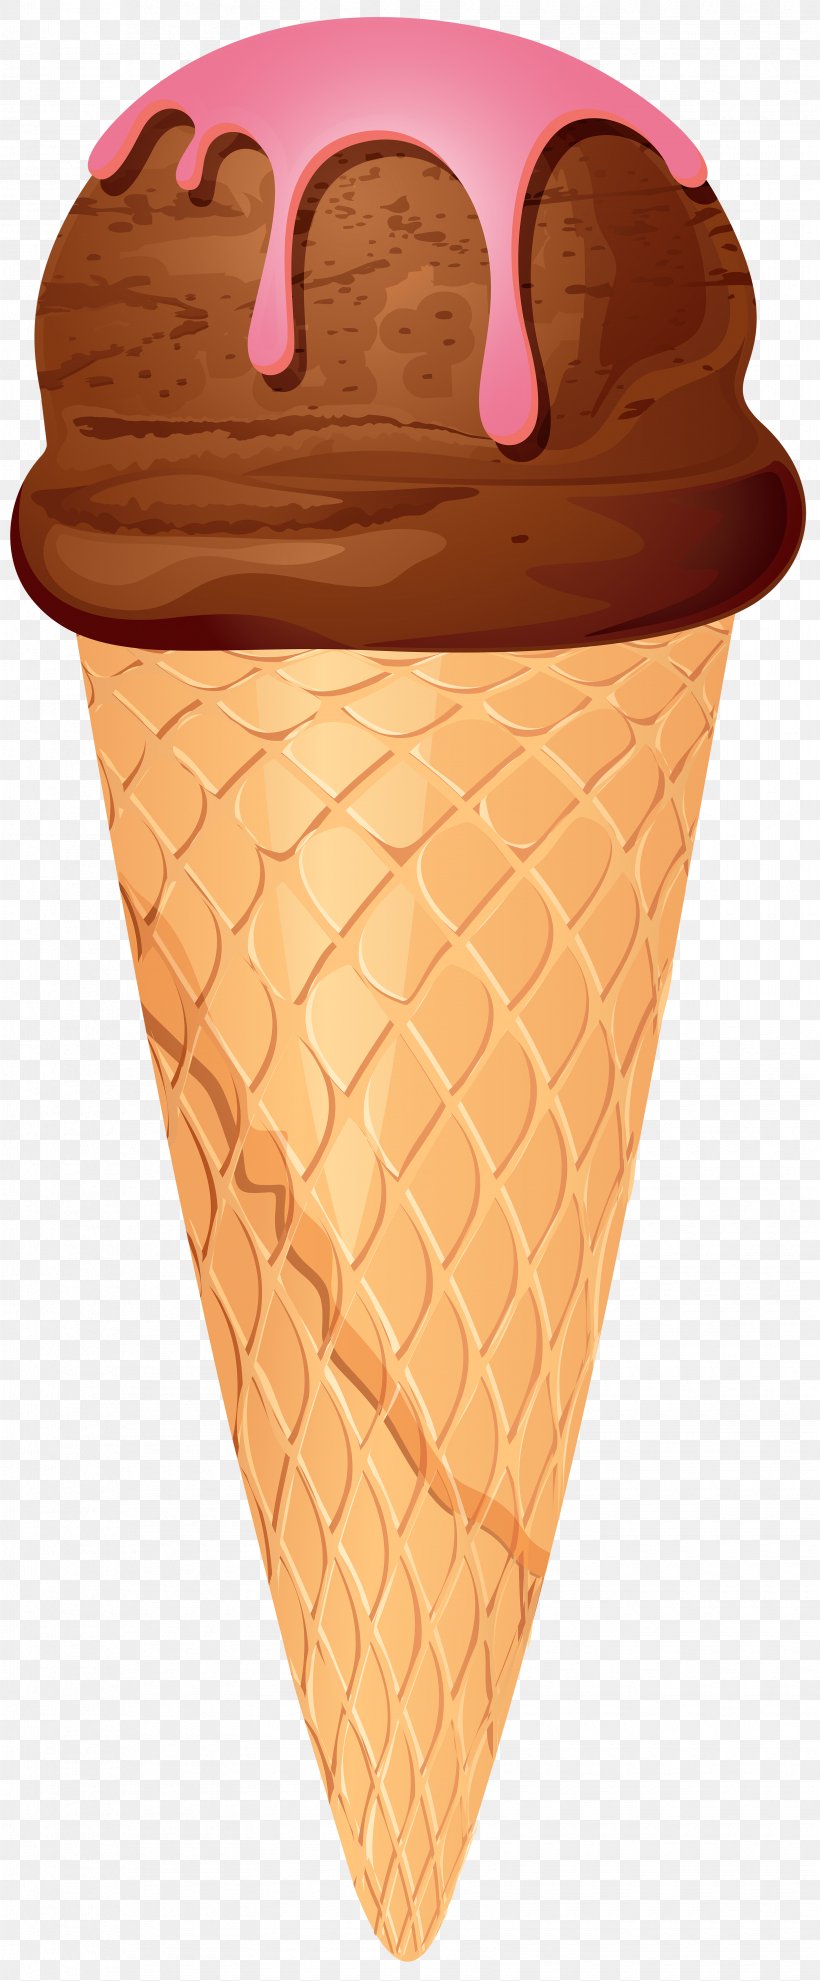 Chocolate Ice Cream Ice Cream Cones Clip Art, PNG, 3310x8000px, Chocolate Ice Cream, Chocolate, Cream, Dairy Product, Dessert Download Free